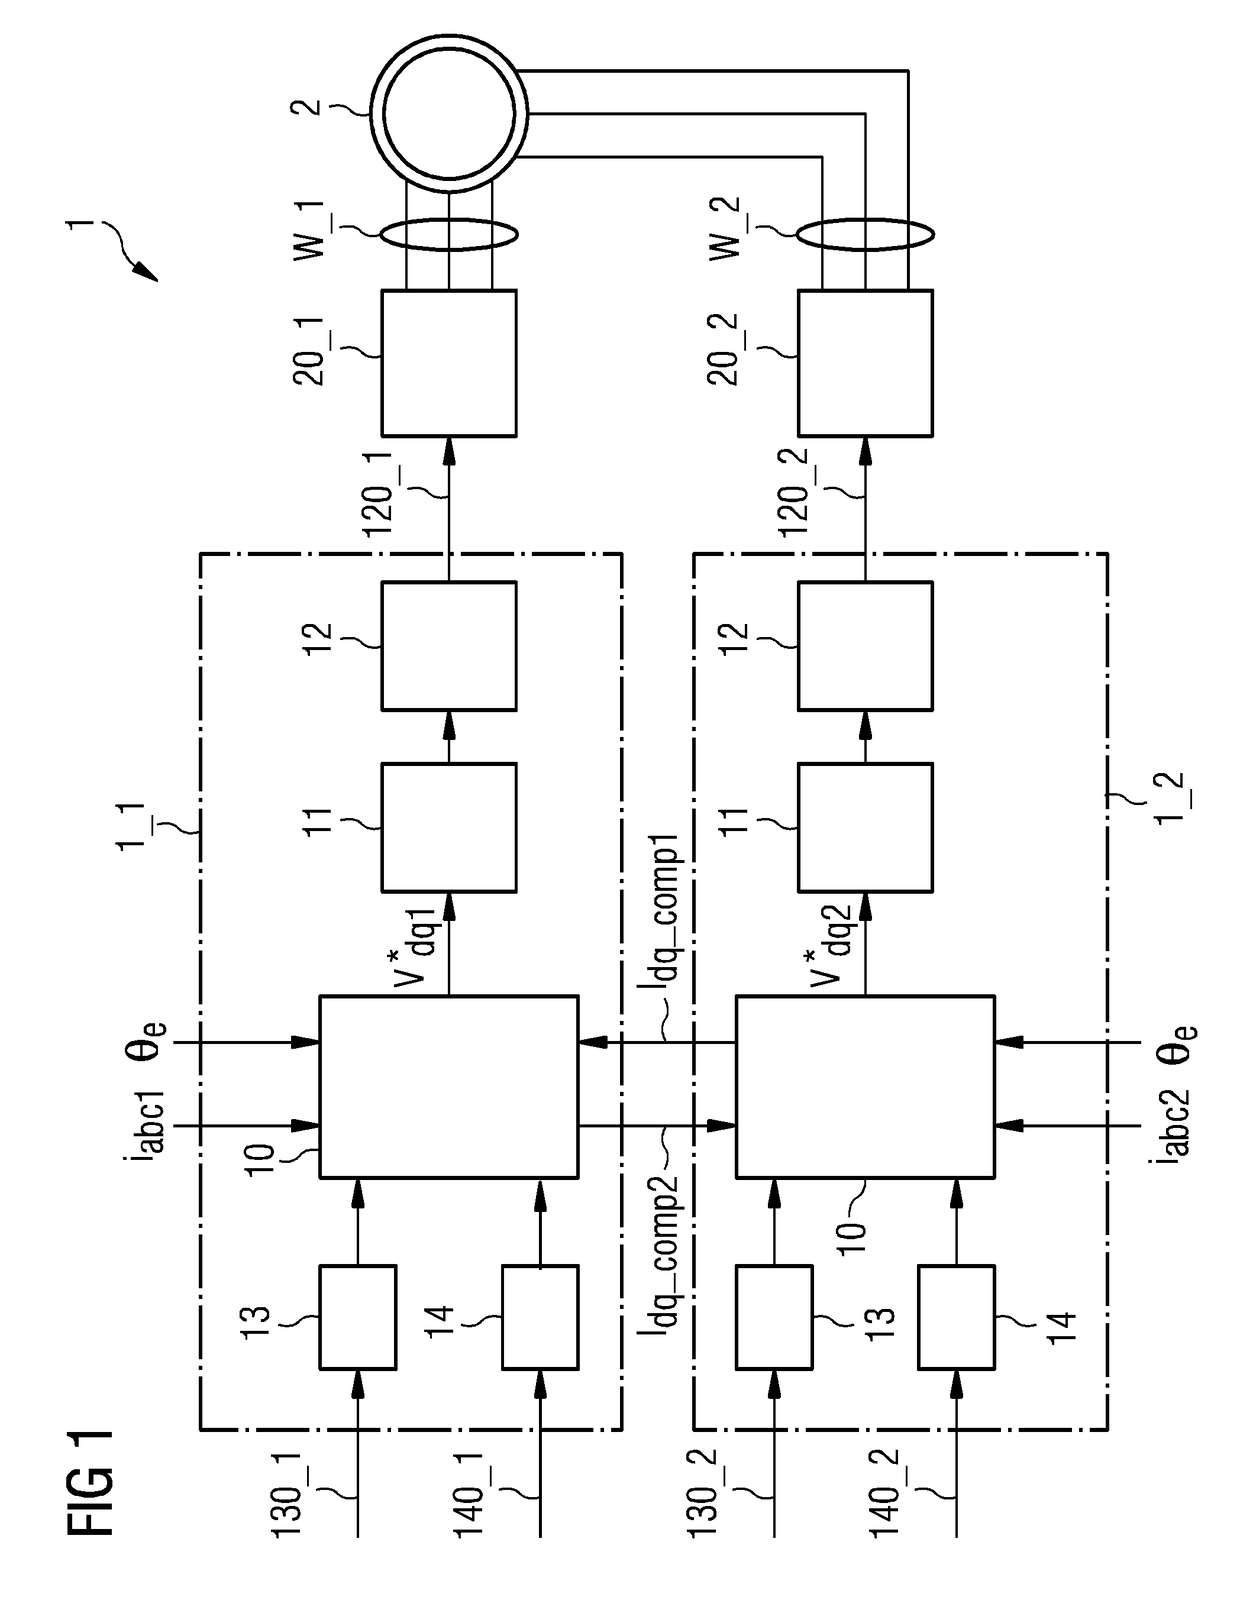 Control arrangement of a multi-stator machine